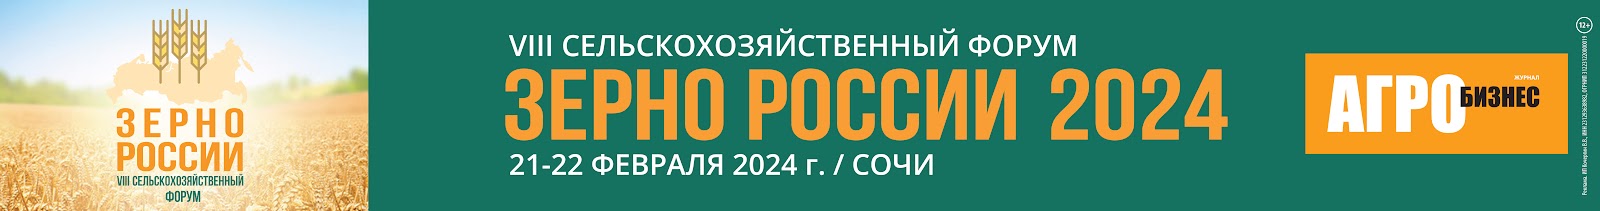 Зерно России 2024